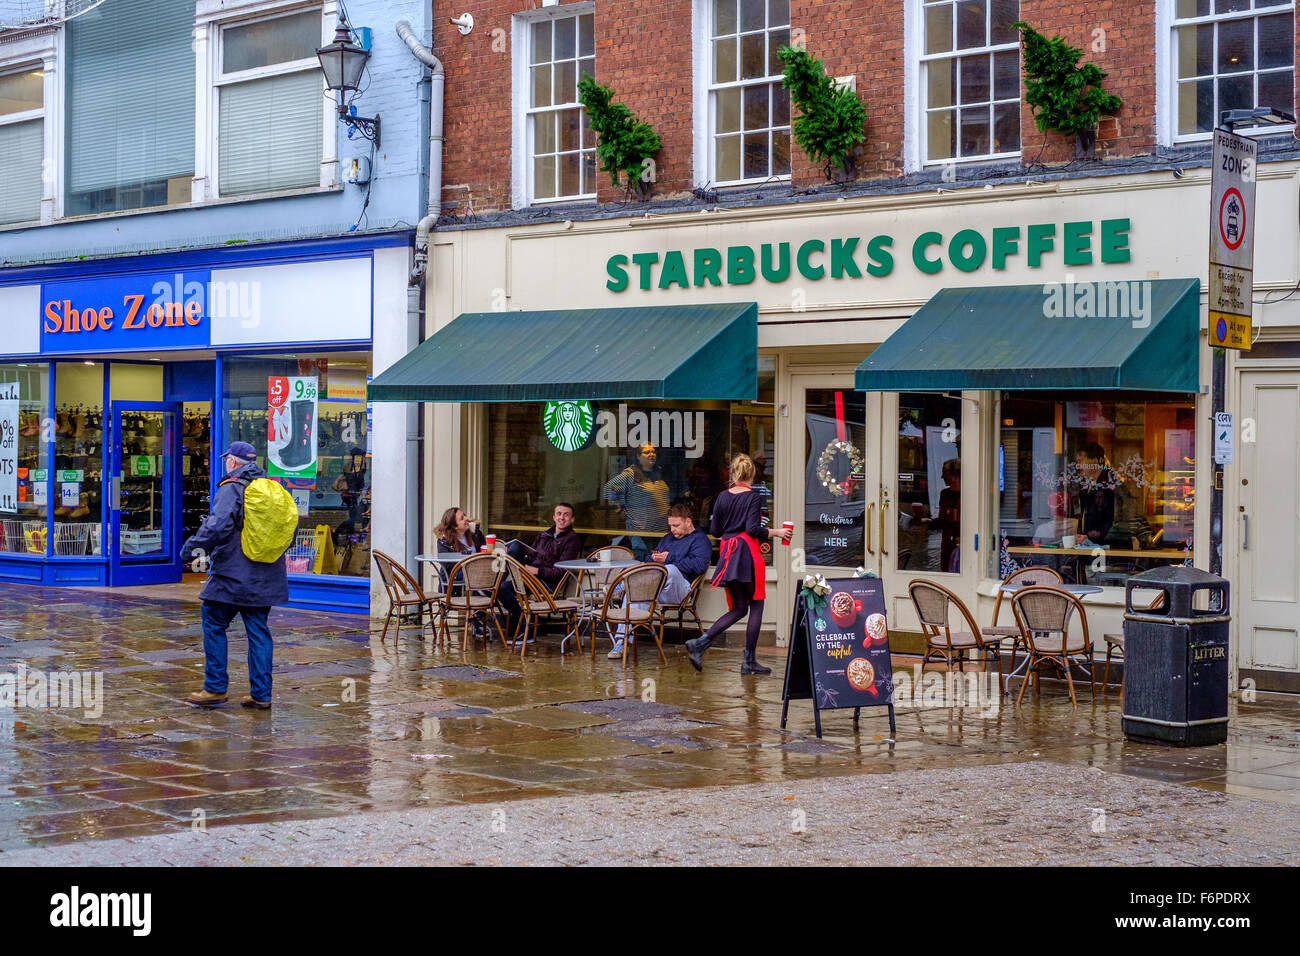 Les gens assis à l'extérieur de l'entreprise Starbucks coffee shop un jour de pluie à Salisbury Wiltshire, Royaume-Uni Banque D'Images